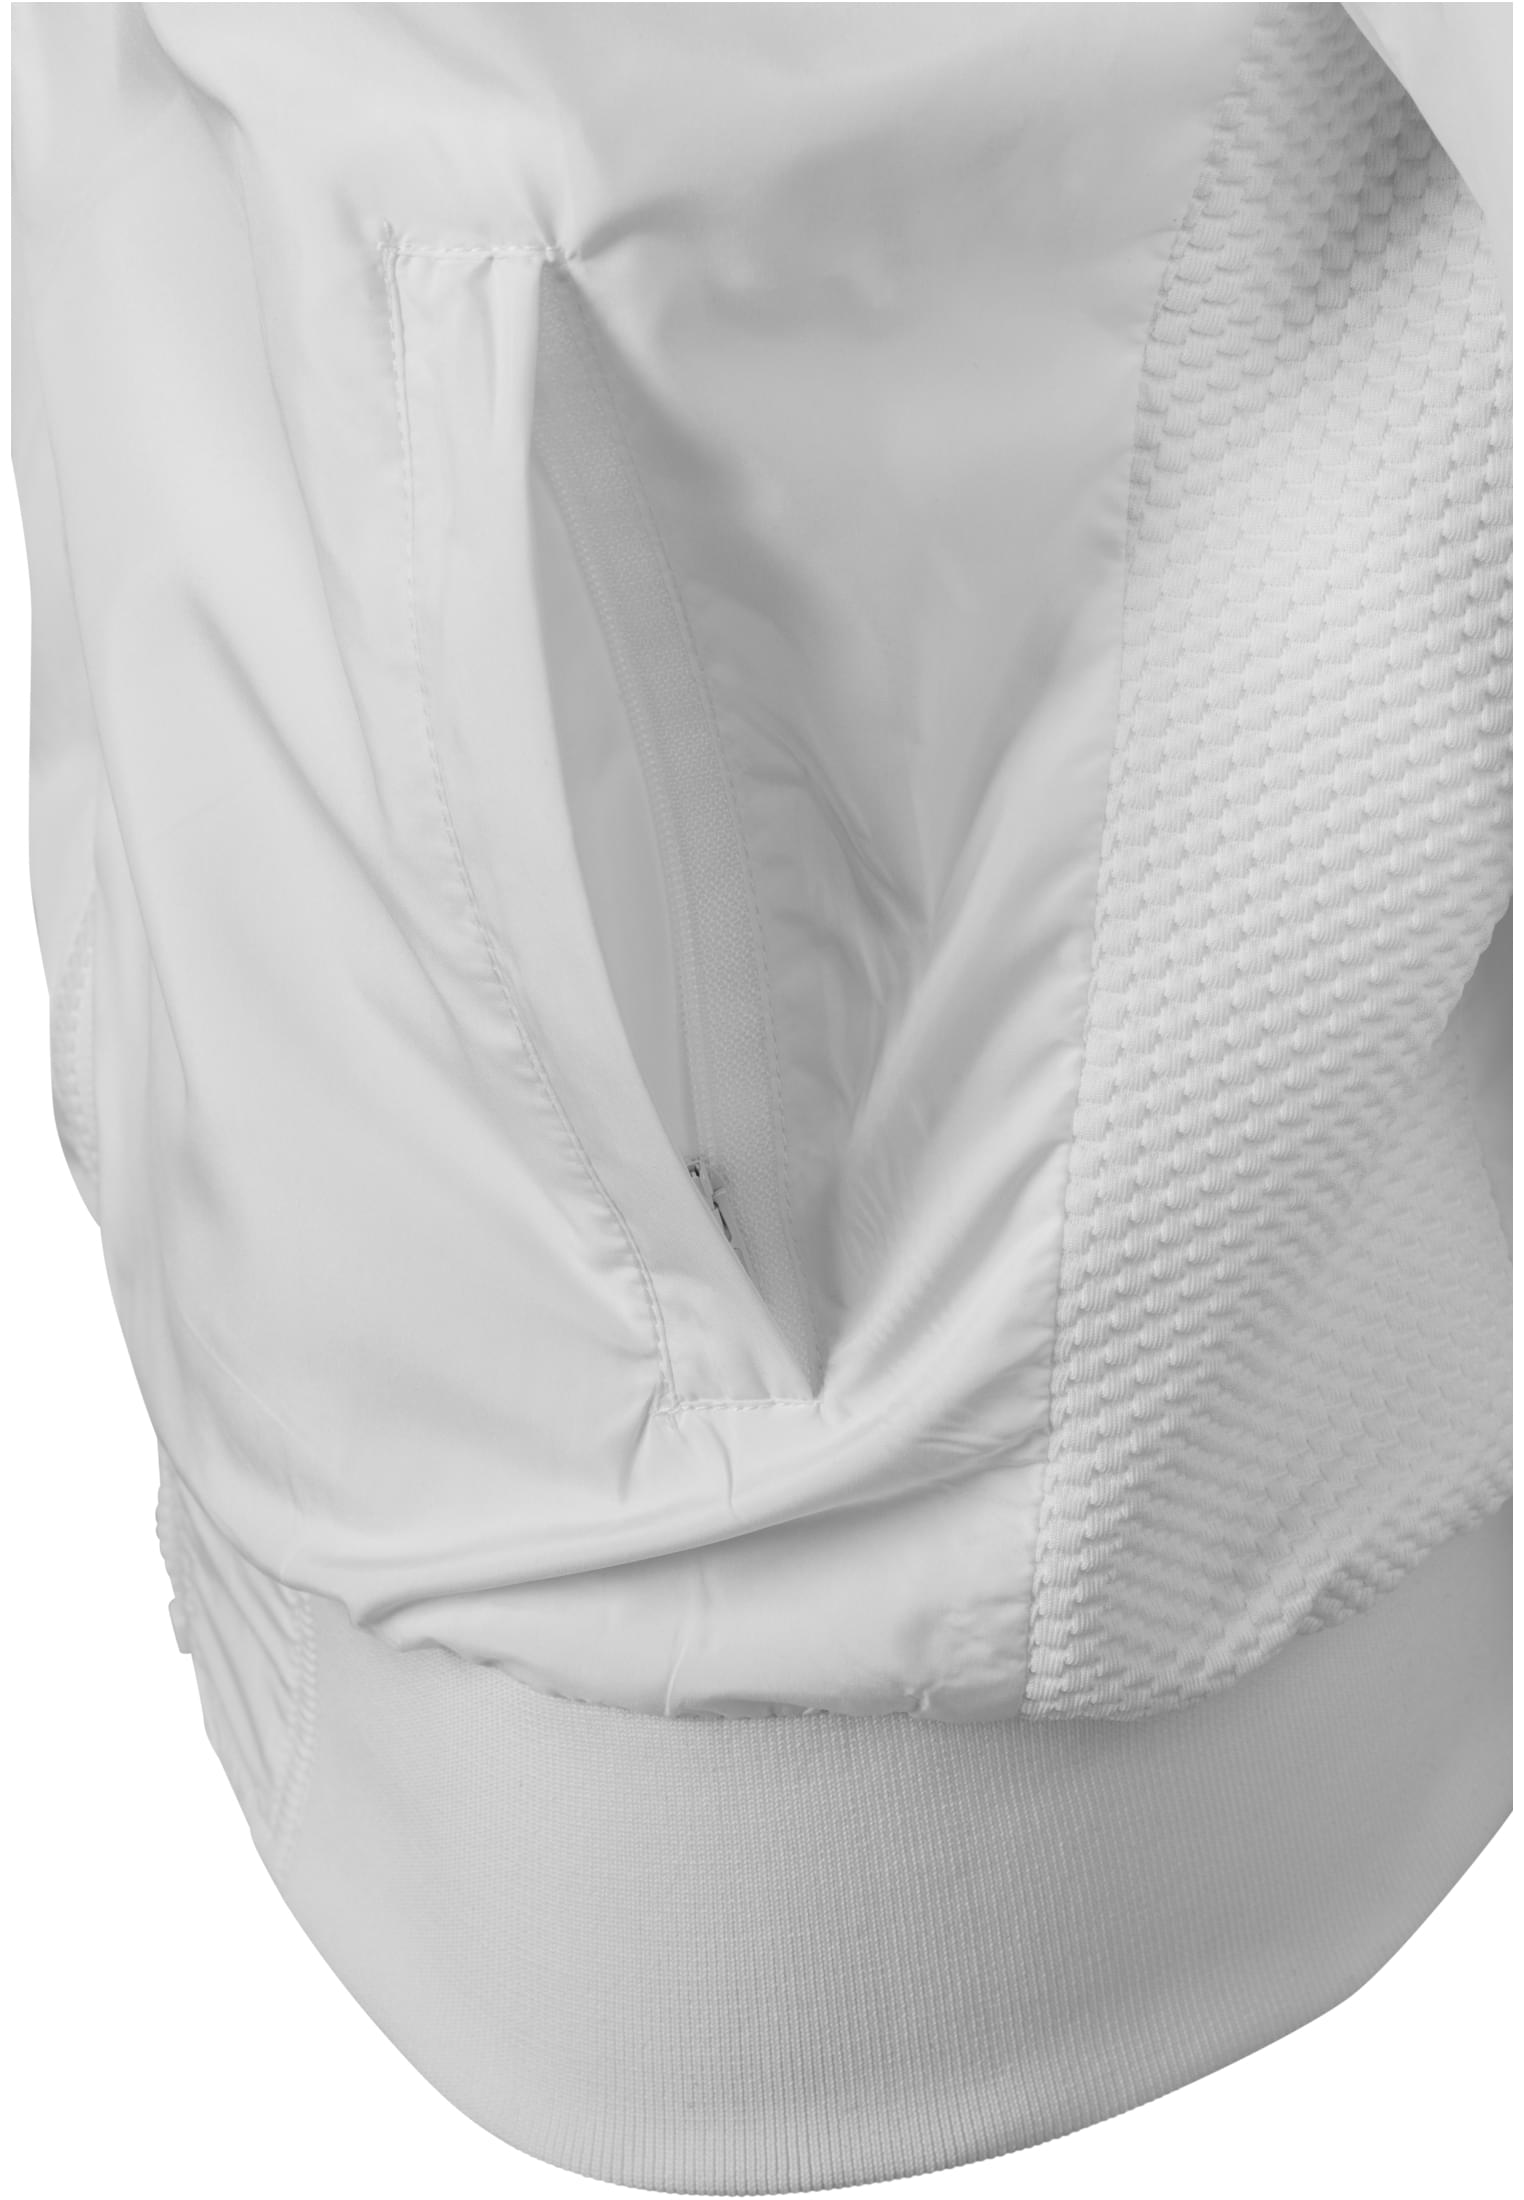 Frauen Ladies Light Bomber Jacket in Farbe white